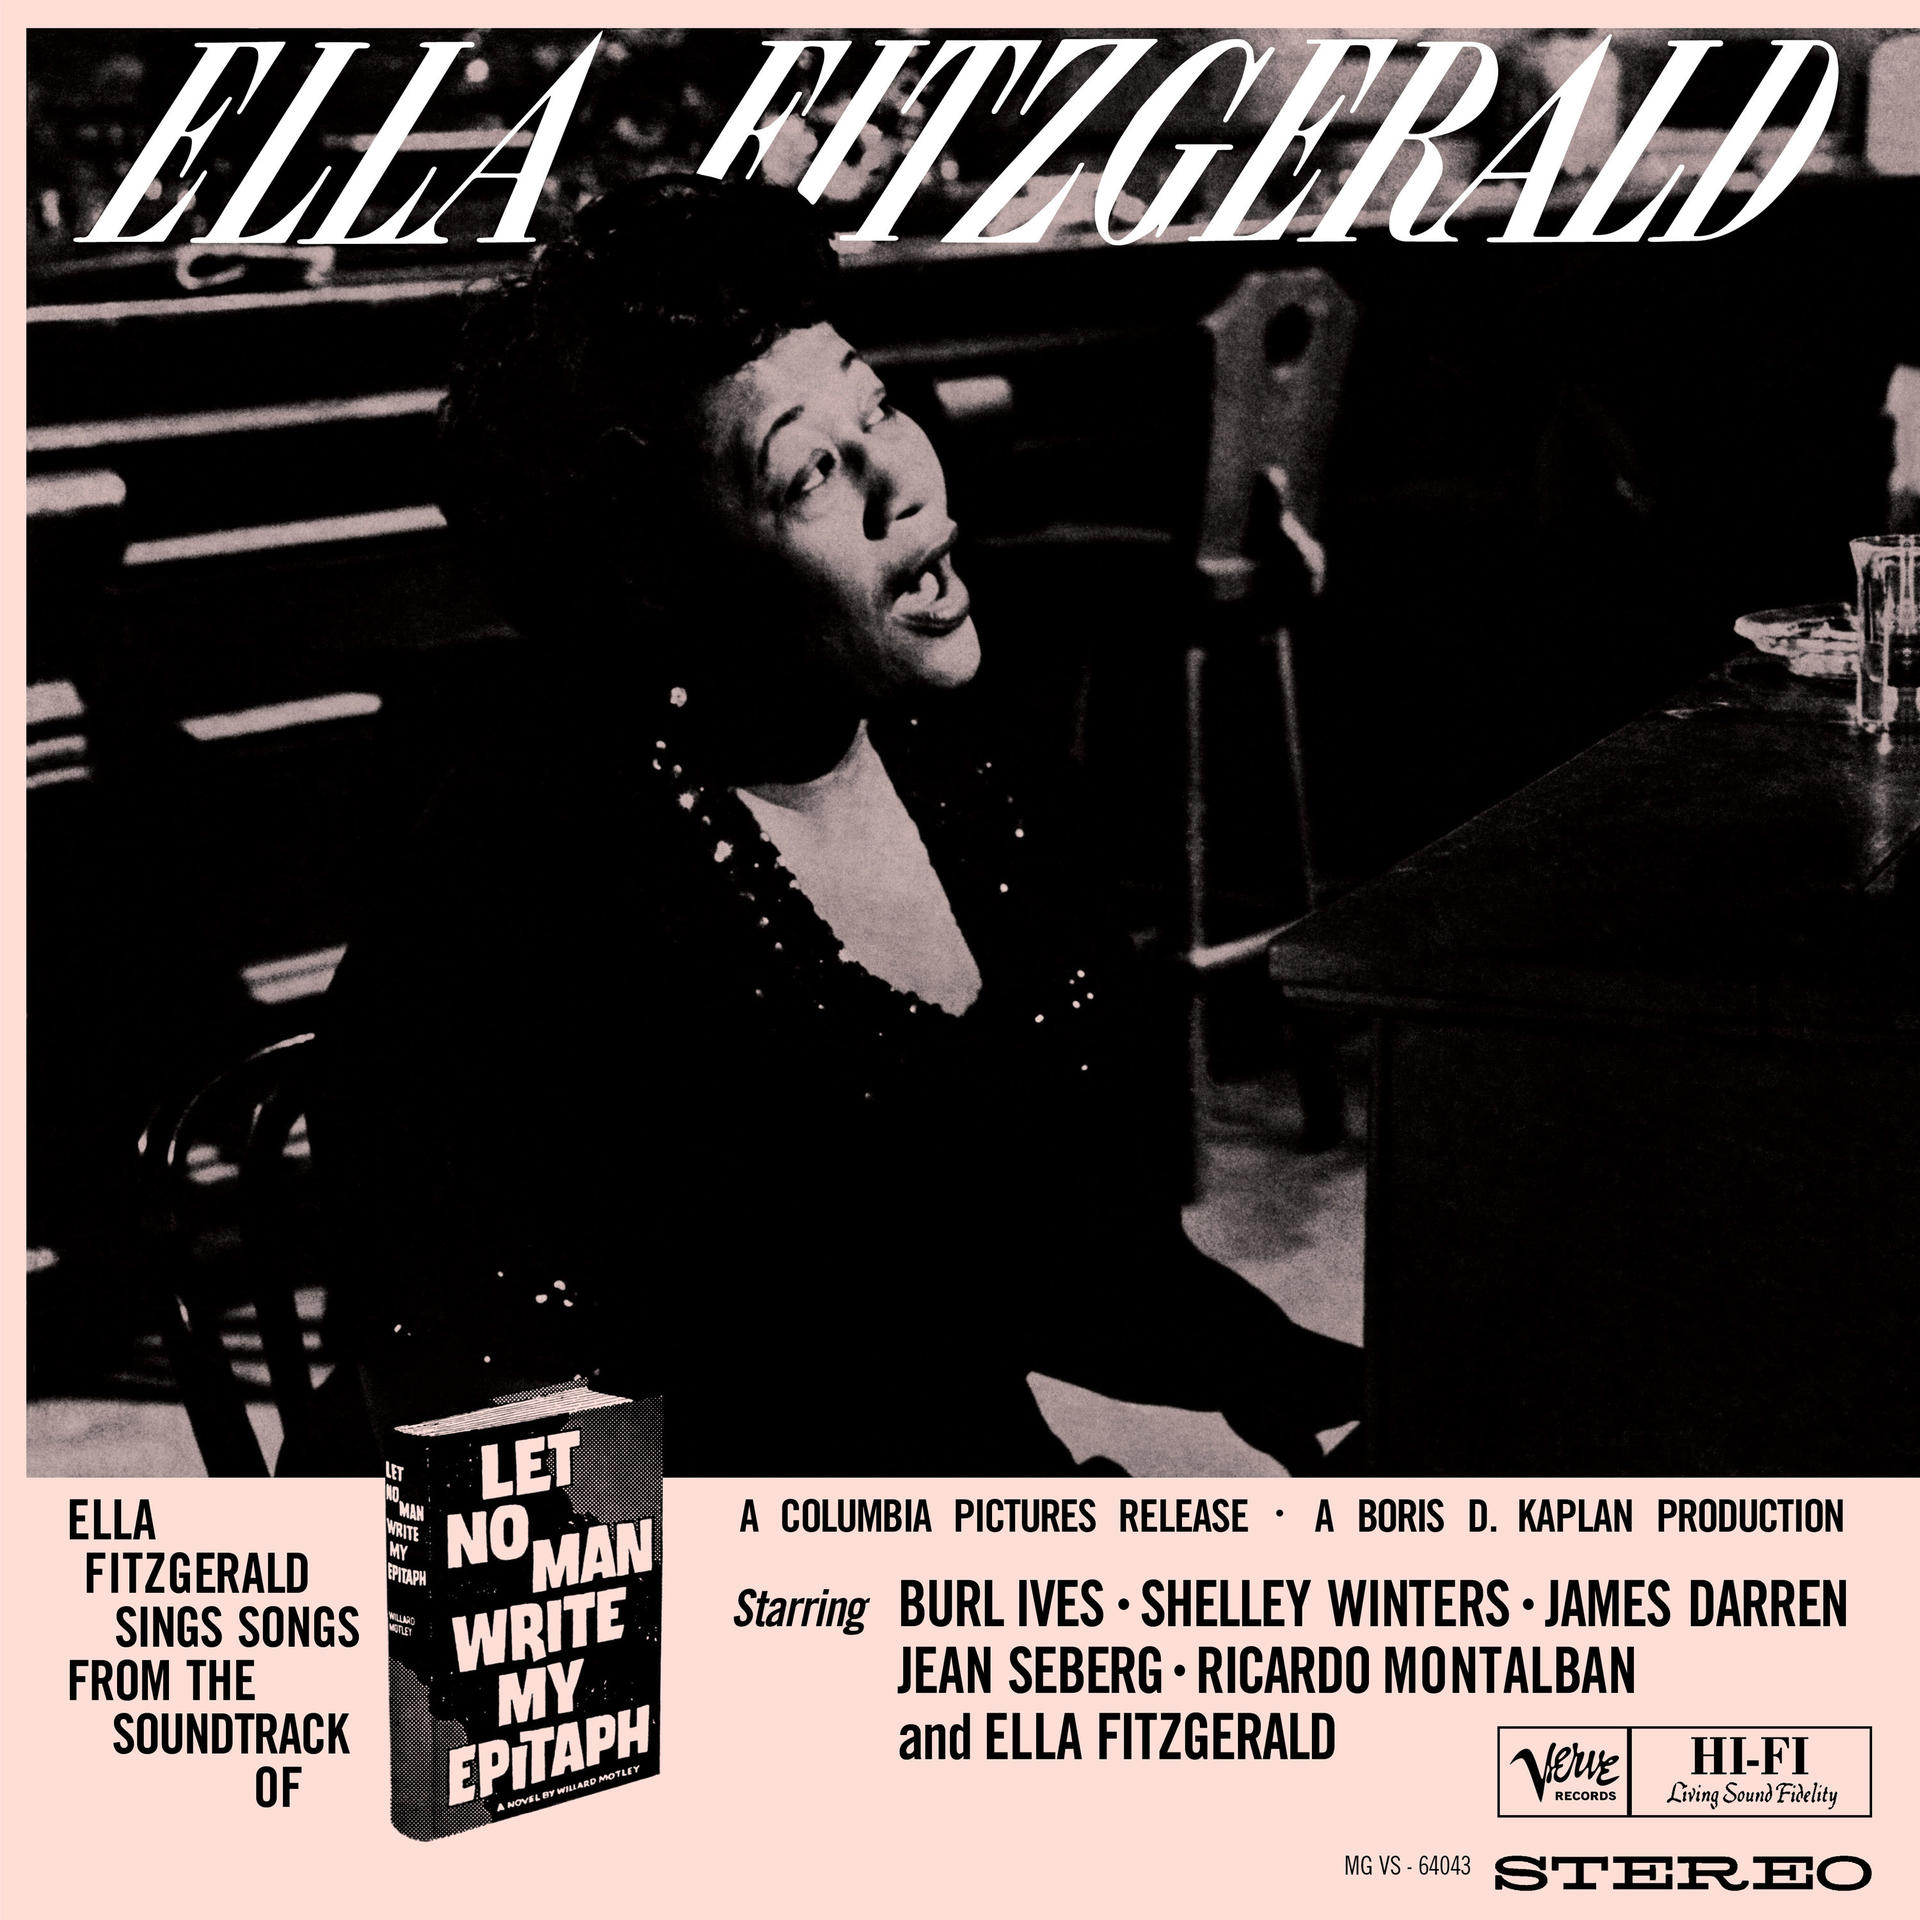 Ella Fitzgerald - Let no - Sounds) Write (Acoustic Epitaph (Vinyl) man My